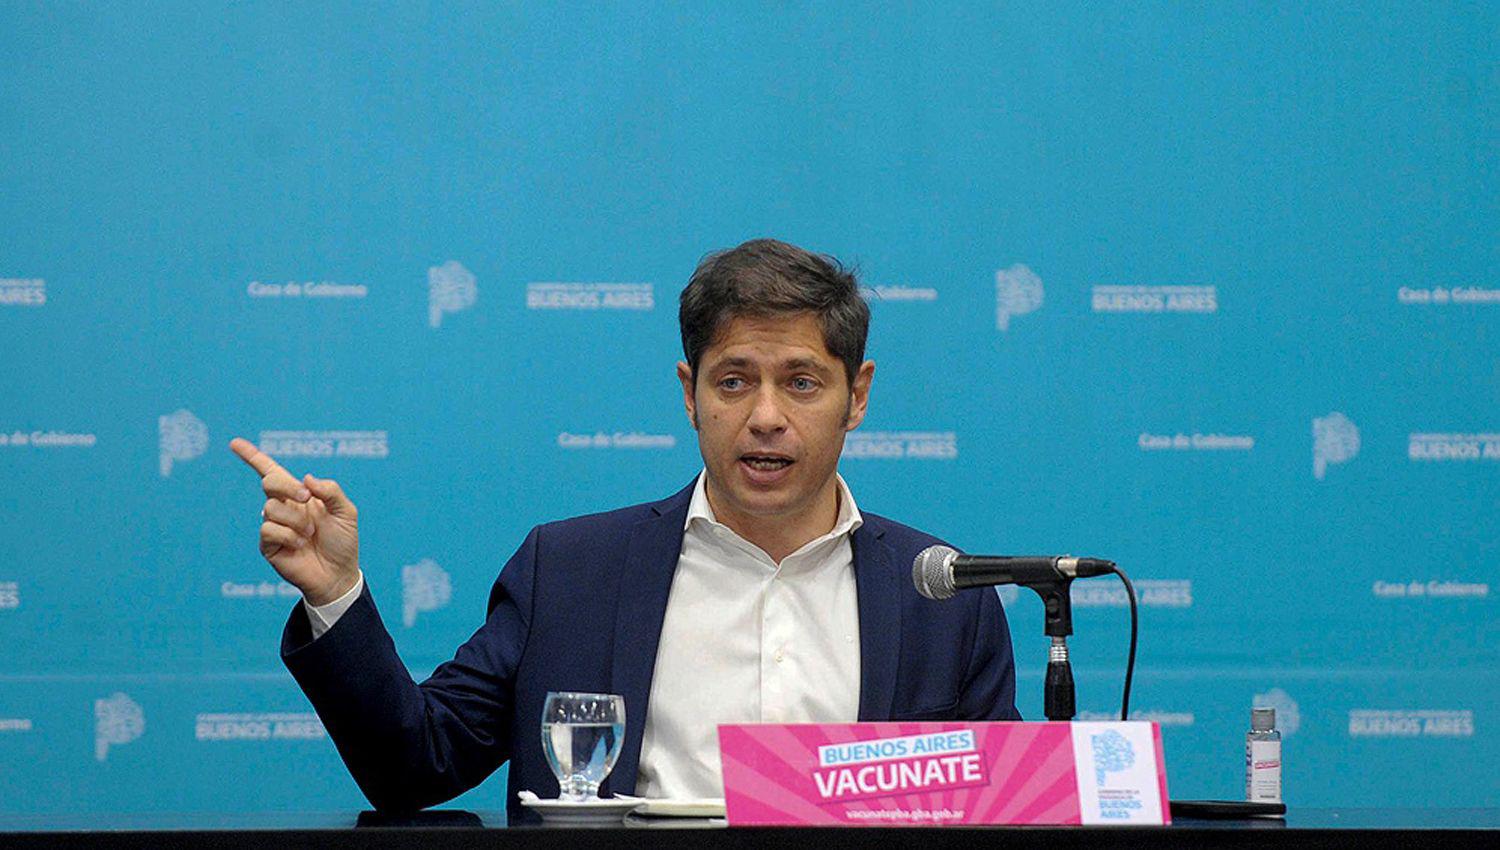 La provincia de Buenos Aires firmoacute un acuerdo para acceder a vacunas Covaxin de la India